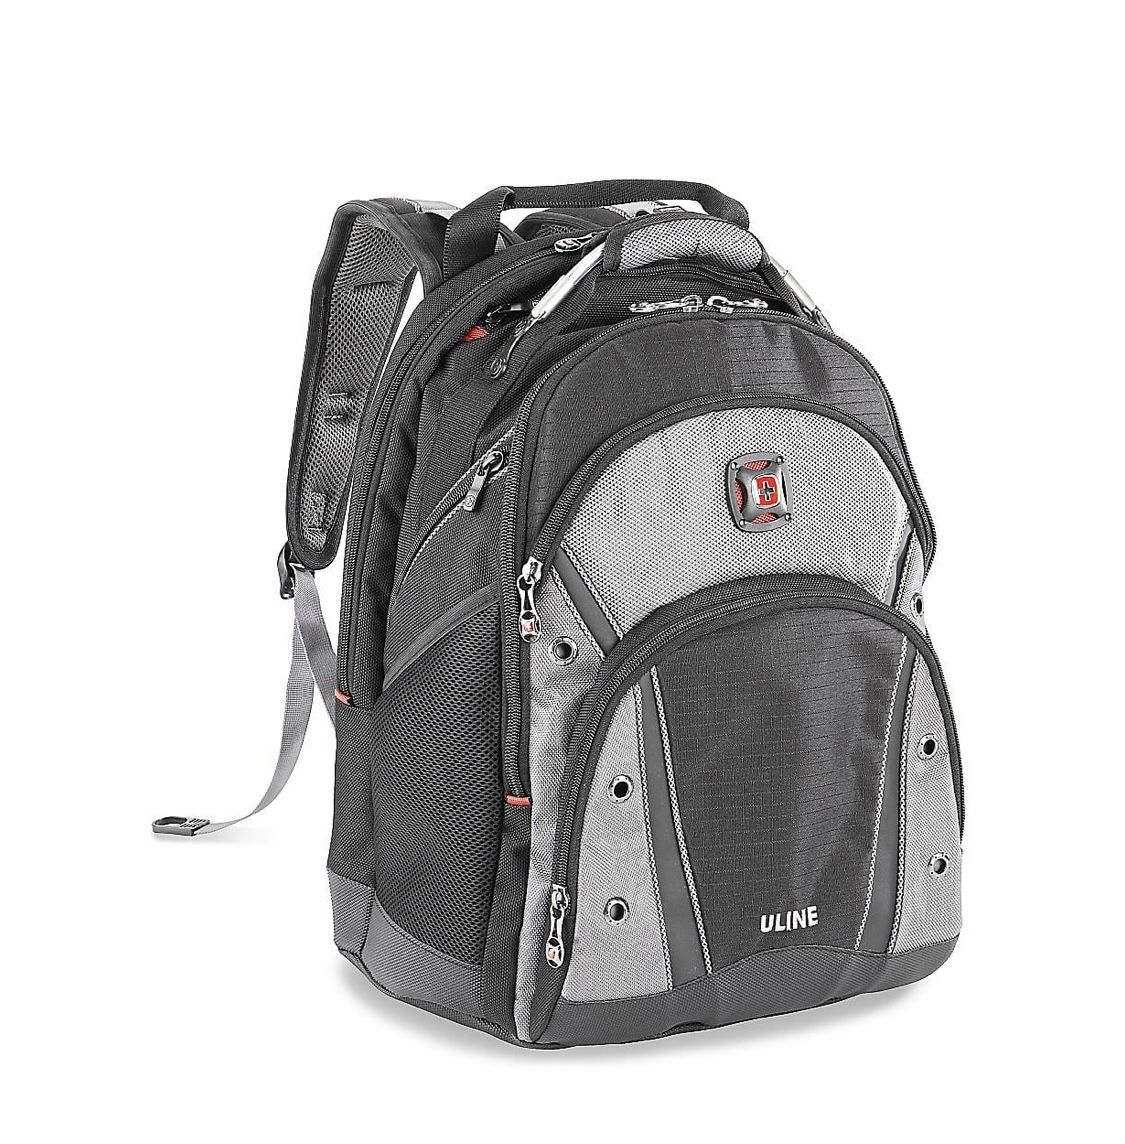 SwissGear backpack (Uline)